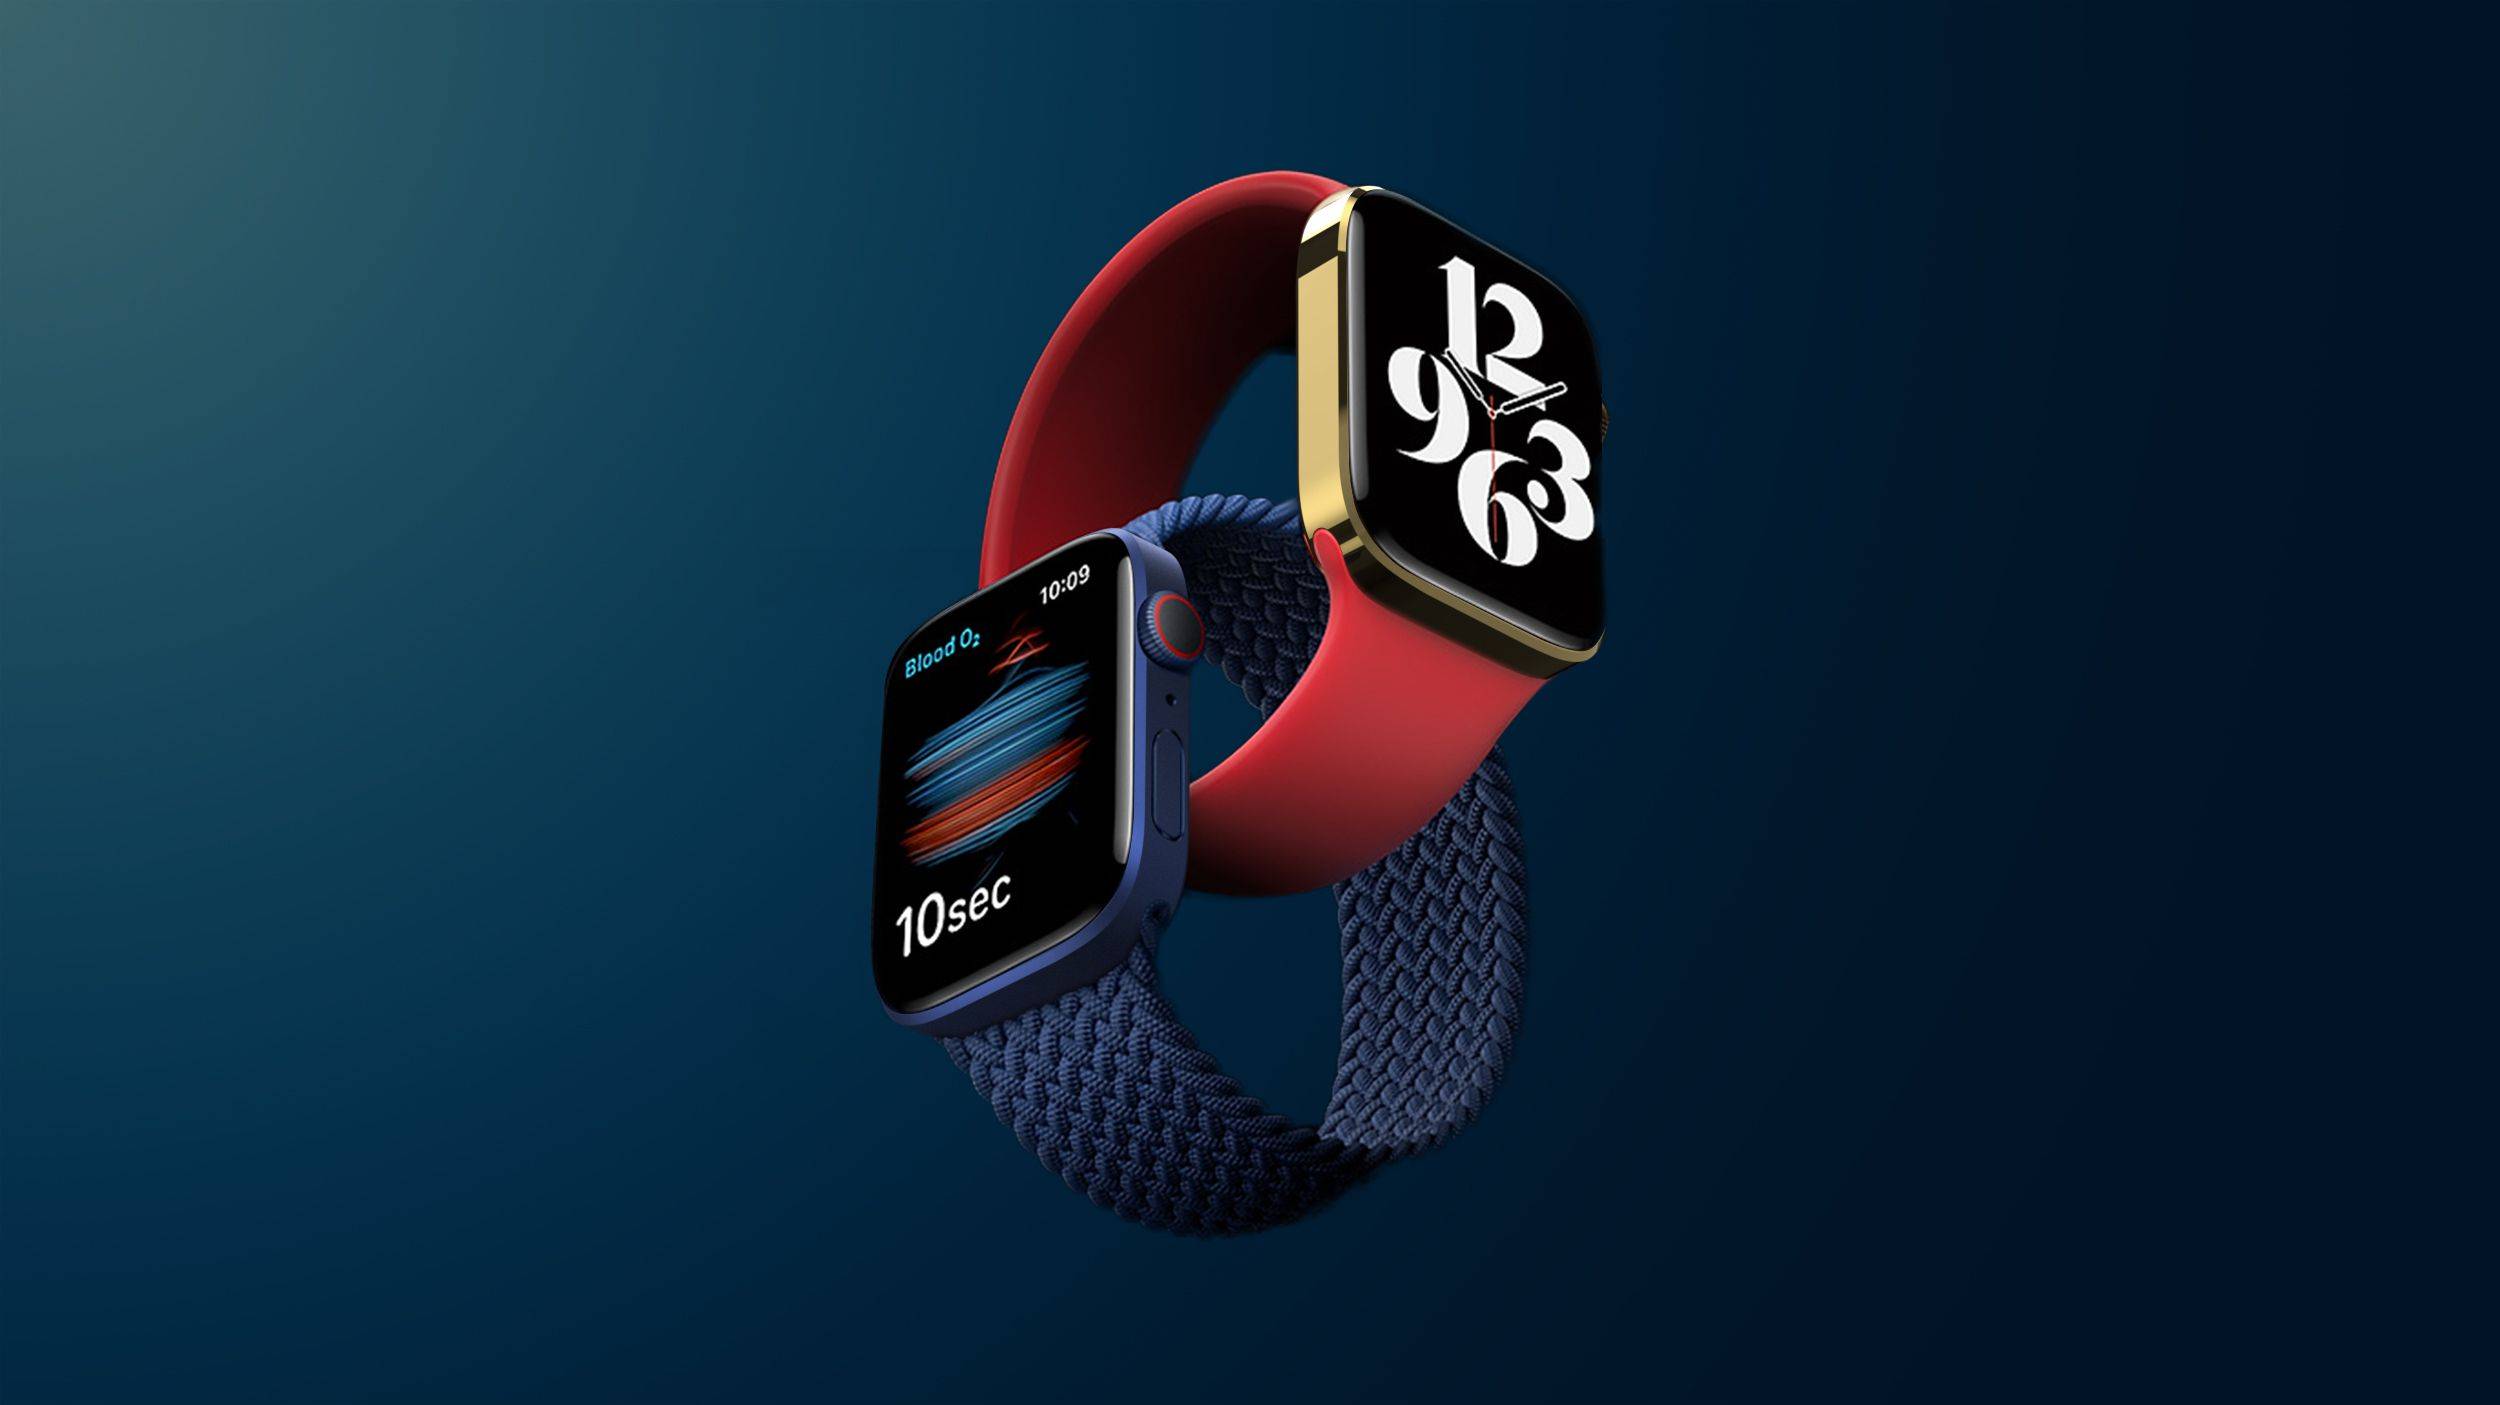 Ming-Chi Kuo: Apple Watch Series 8 wird Körpertemperatur messen können und die neuen AirPods werden die Gesundheit des Nutzers überwachen können